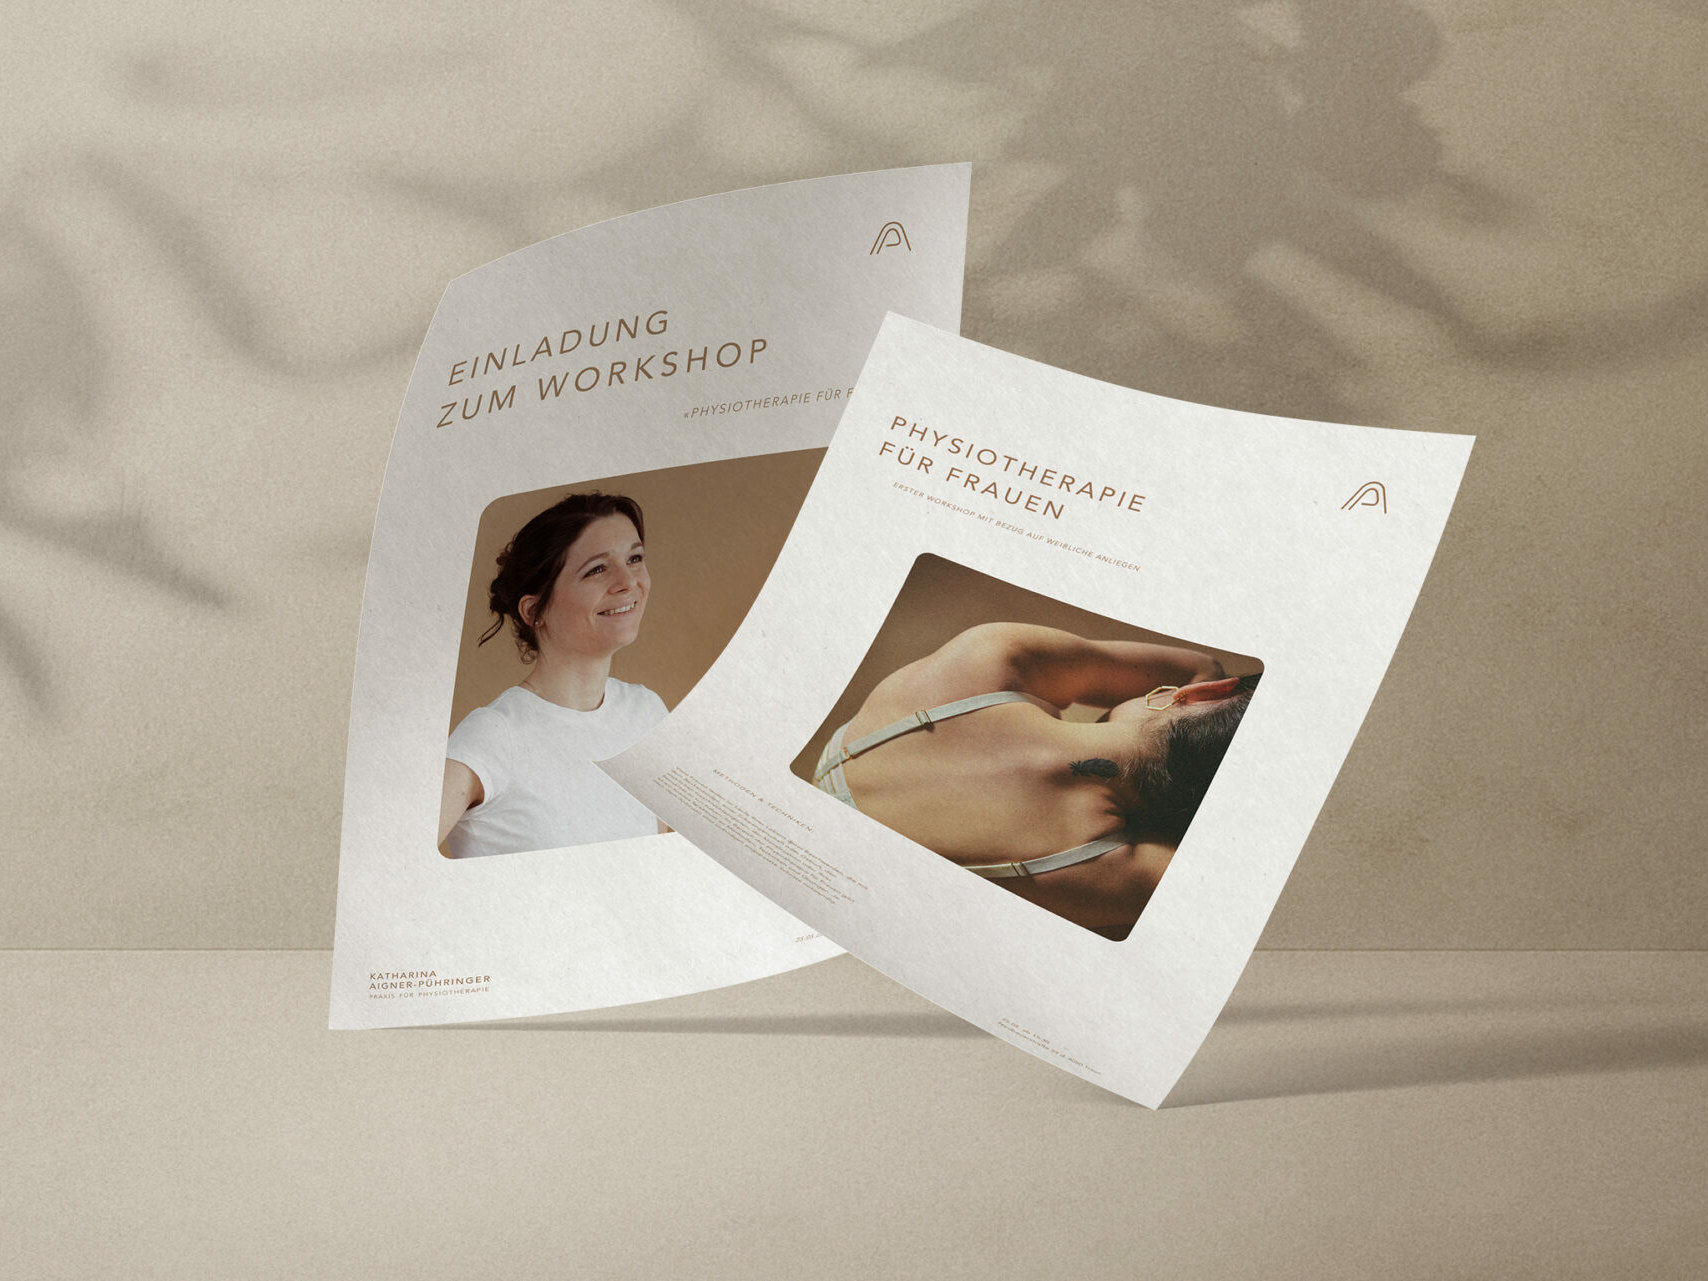 Zwei Flyer mit Logo, Überschrift und Foto sowie Informationen zu Veranstaltungen von Katharina Aigner-Puehringer auf beigen Hintergrund.